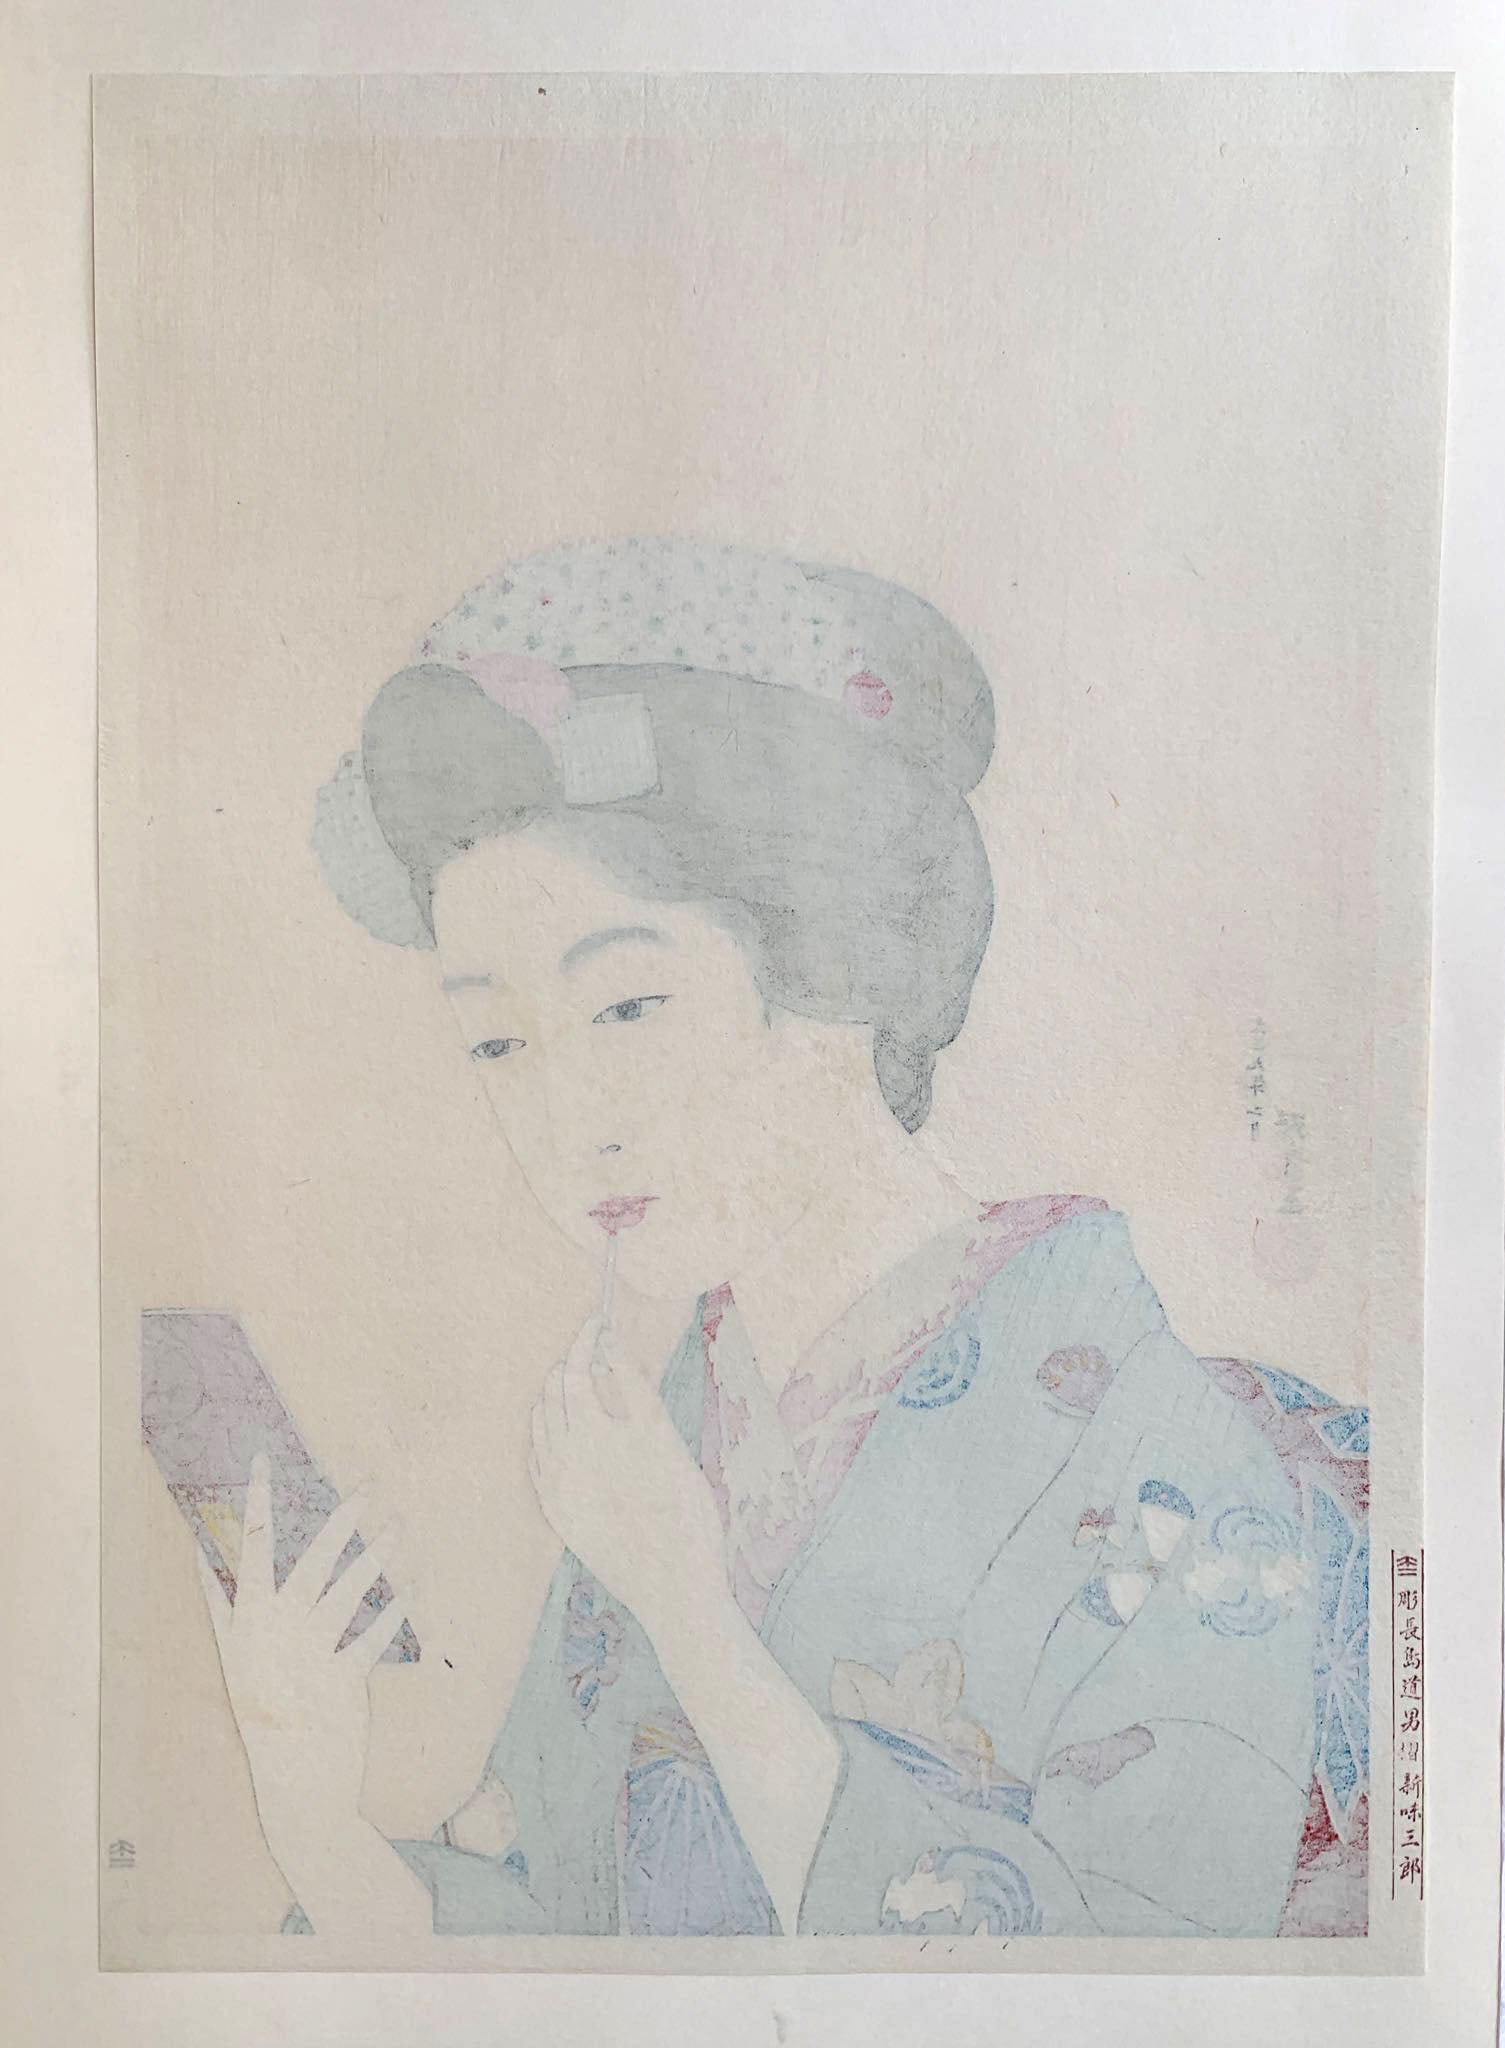 Estampe japonaise d’une femme se mettant du rouge à lèvre avec un pinceau, se regardant dans le miroir, portant un kimono vert., dos de l'estampe